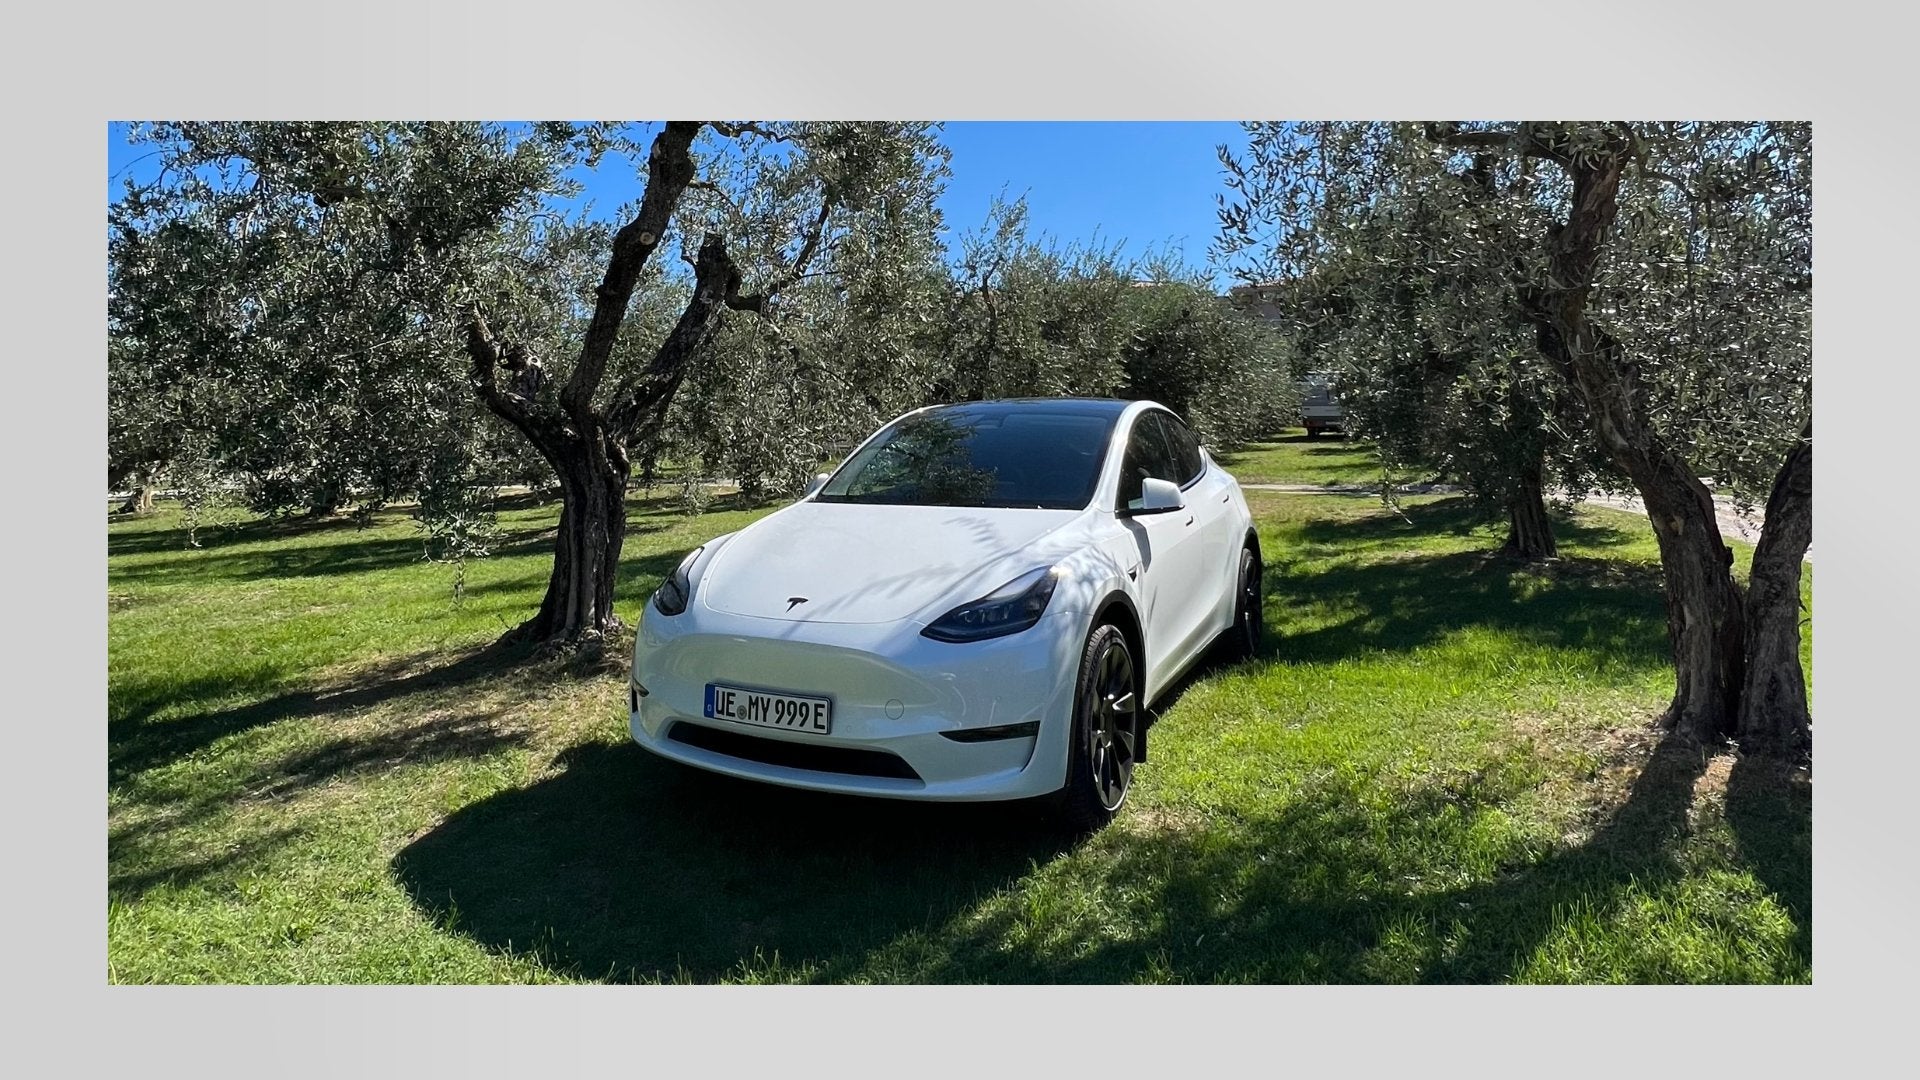 ecomento.de on X: Tesla Model Y meistverkauftes Auto in